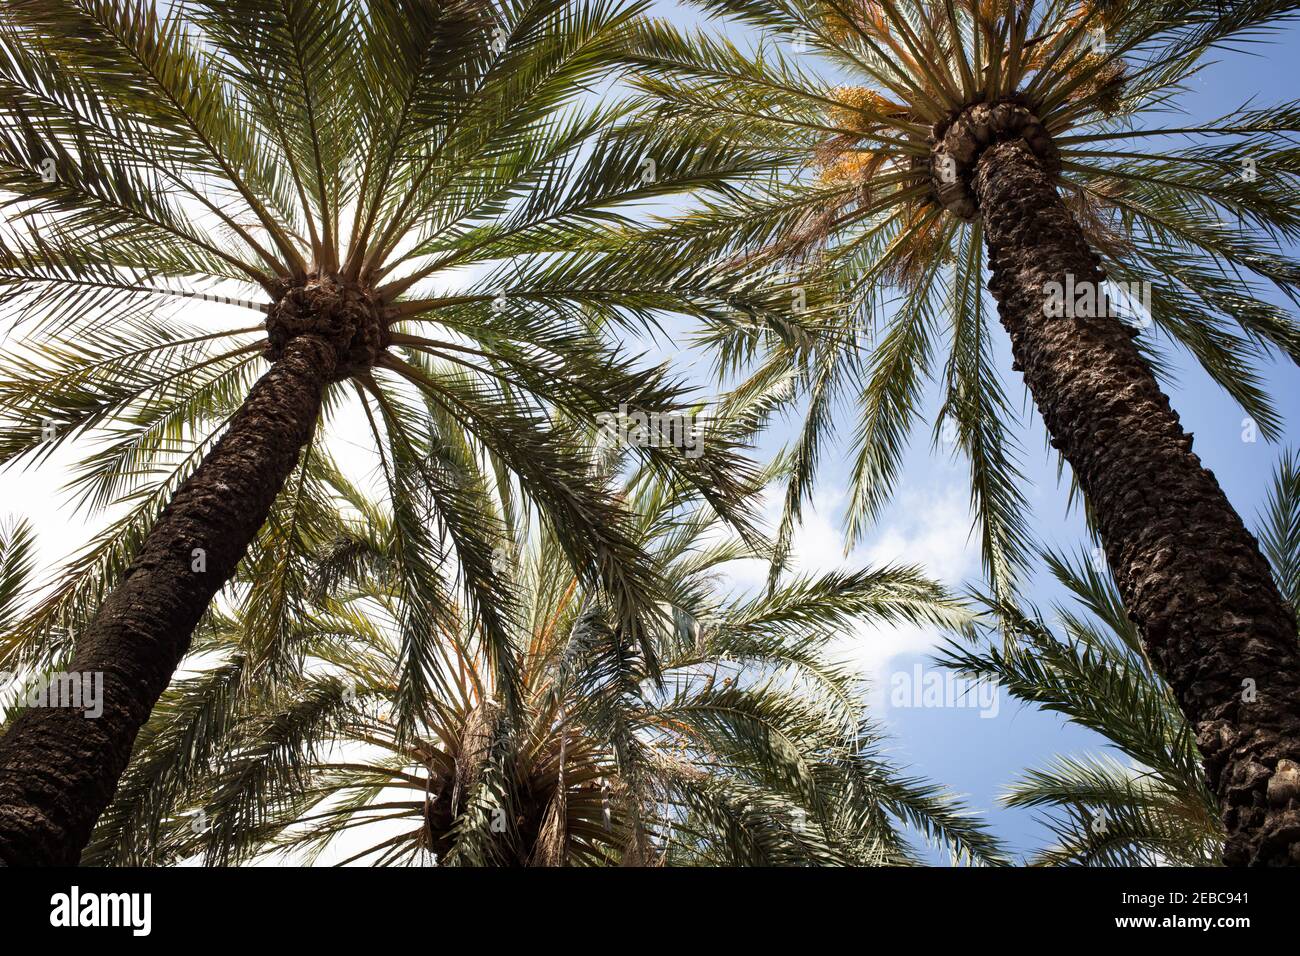 Backlit palm fronds under a blue sky Stock Photo